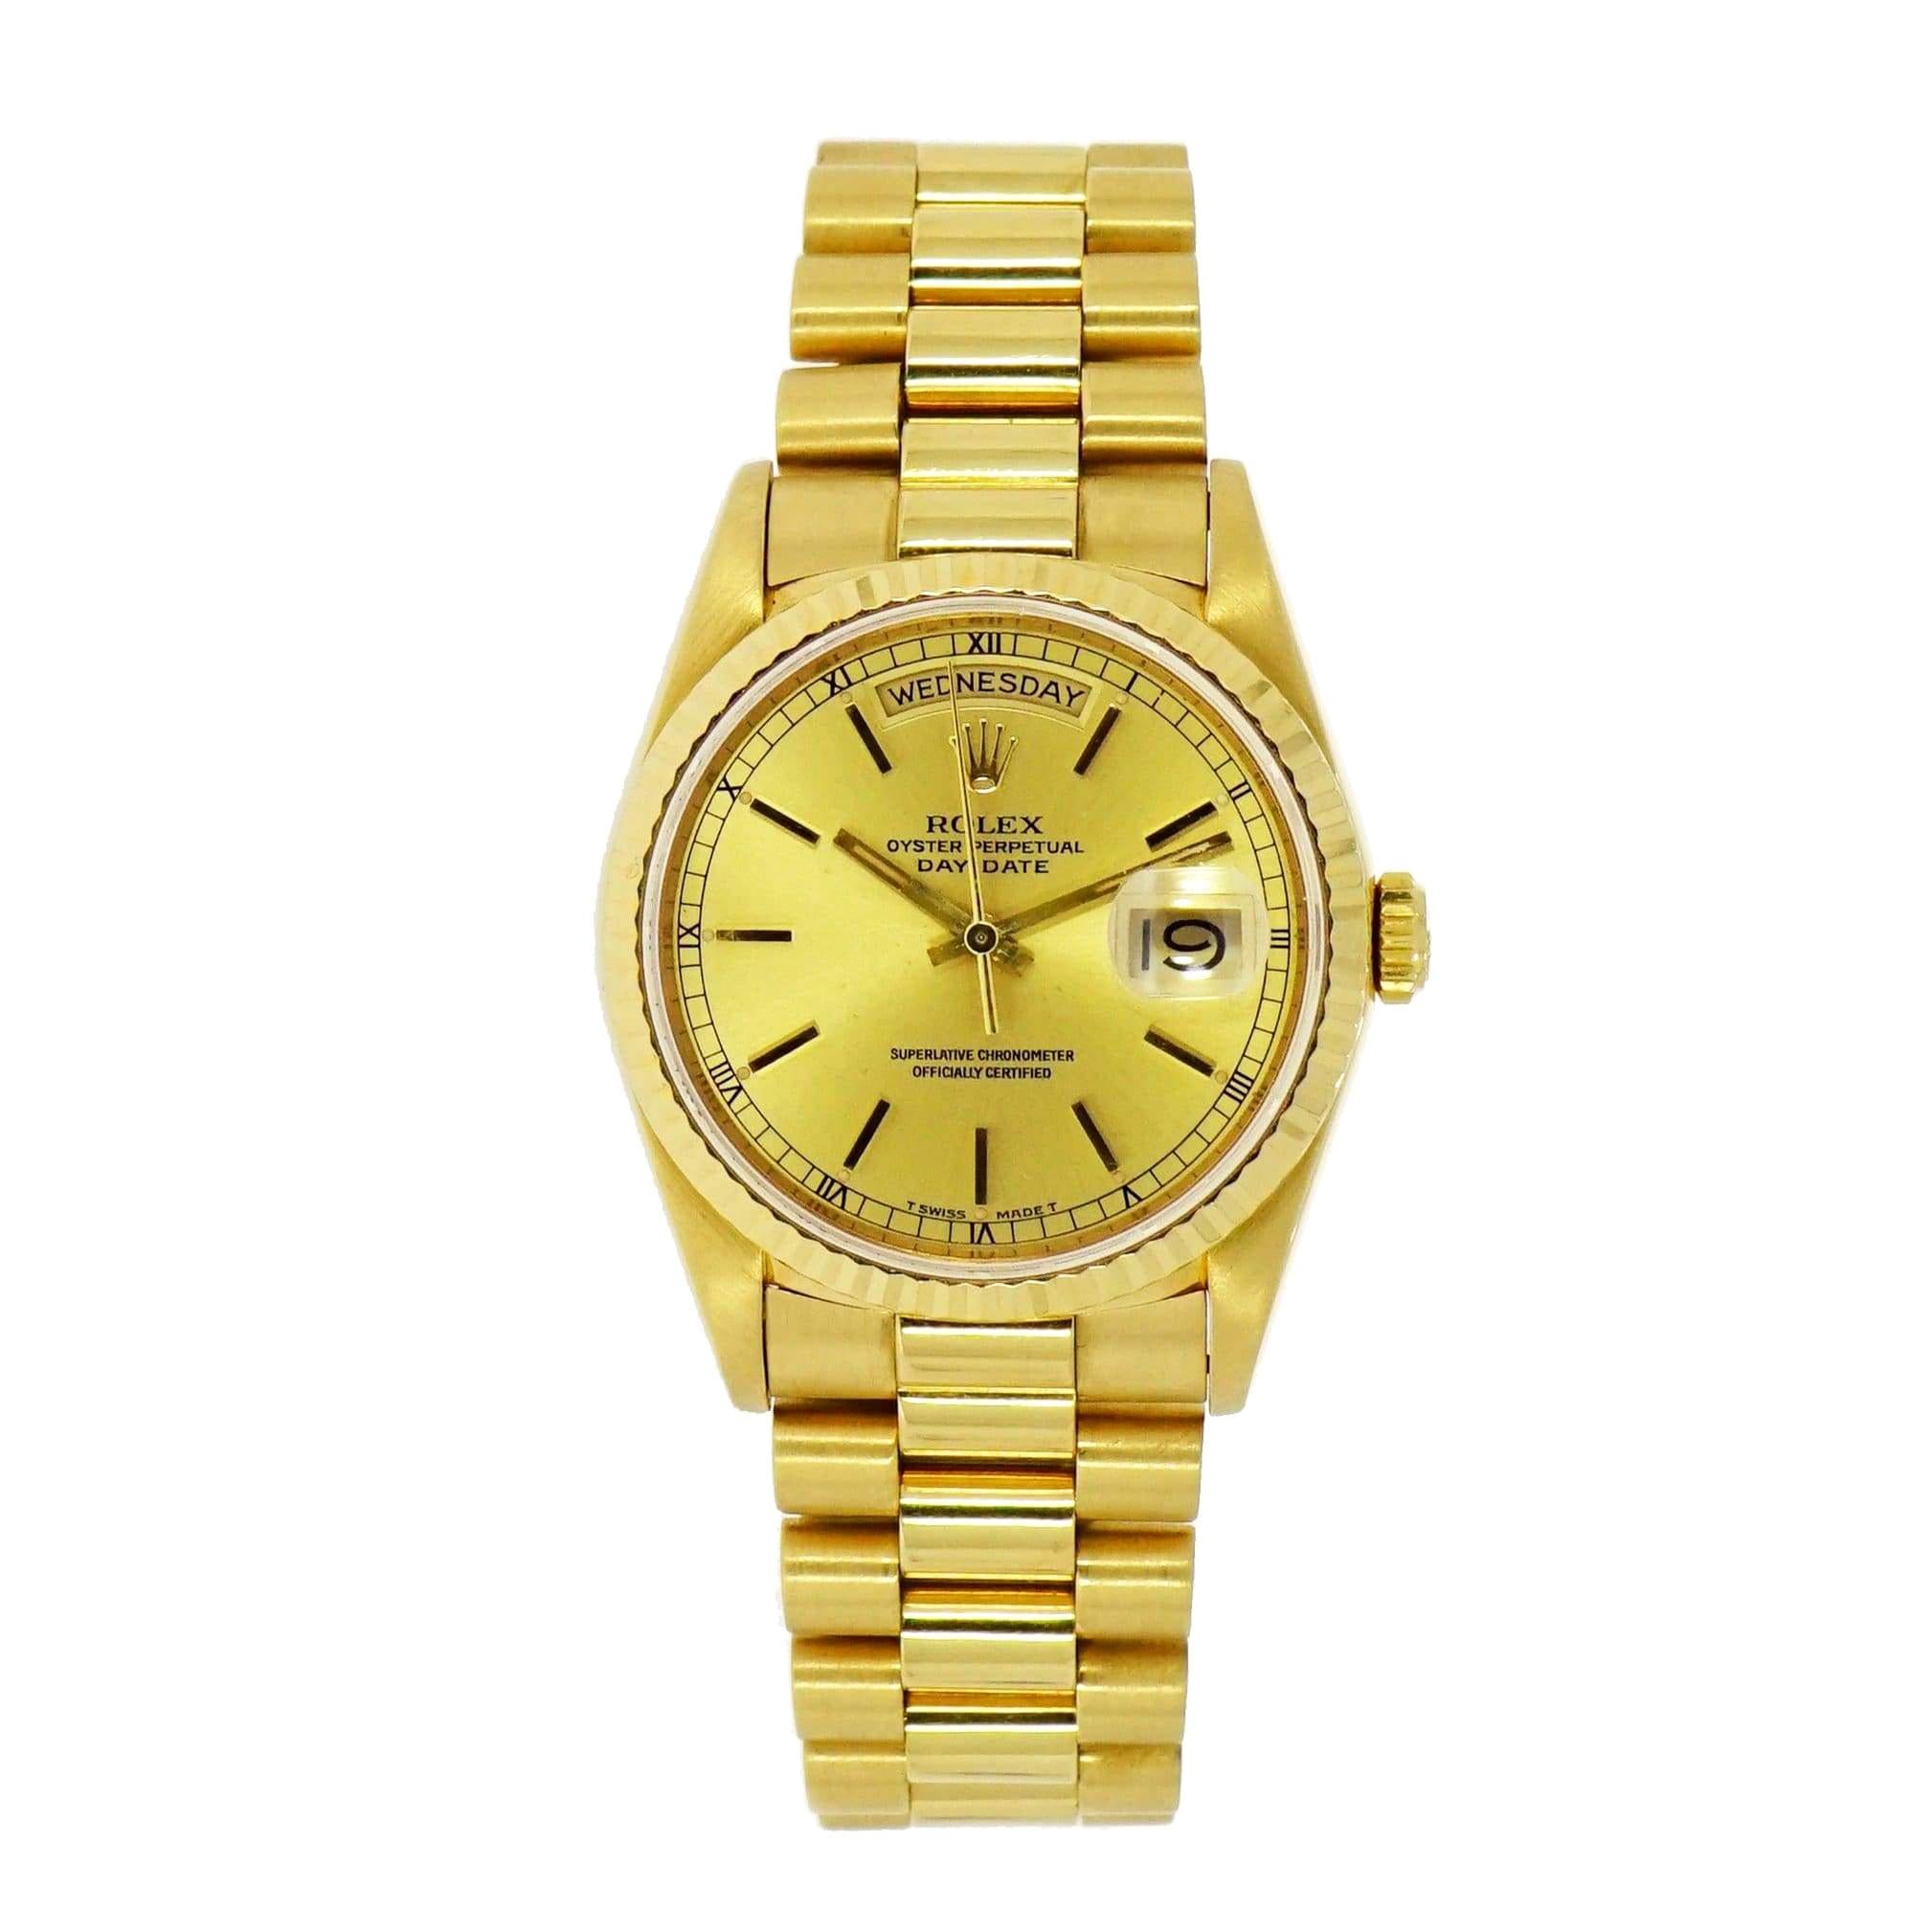 Vintage Rolex Day-Date 18 Karat Yellow Gold